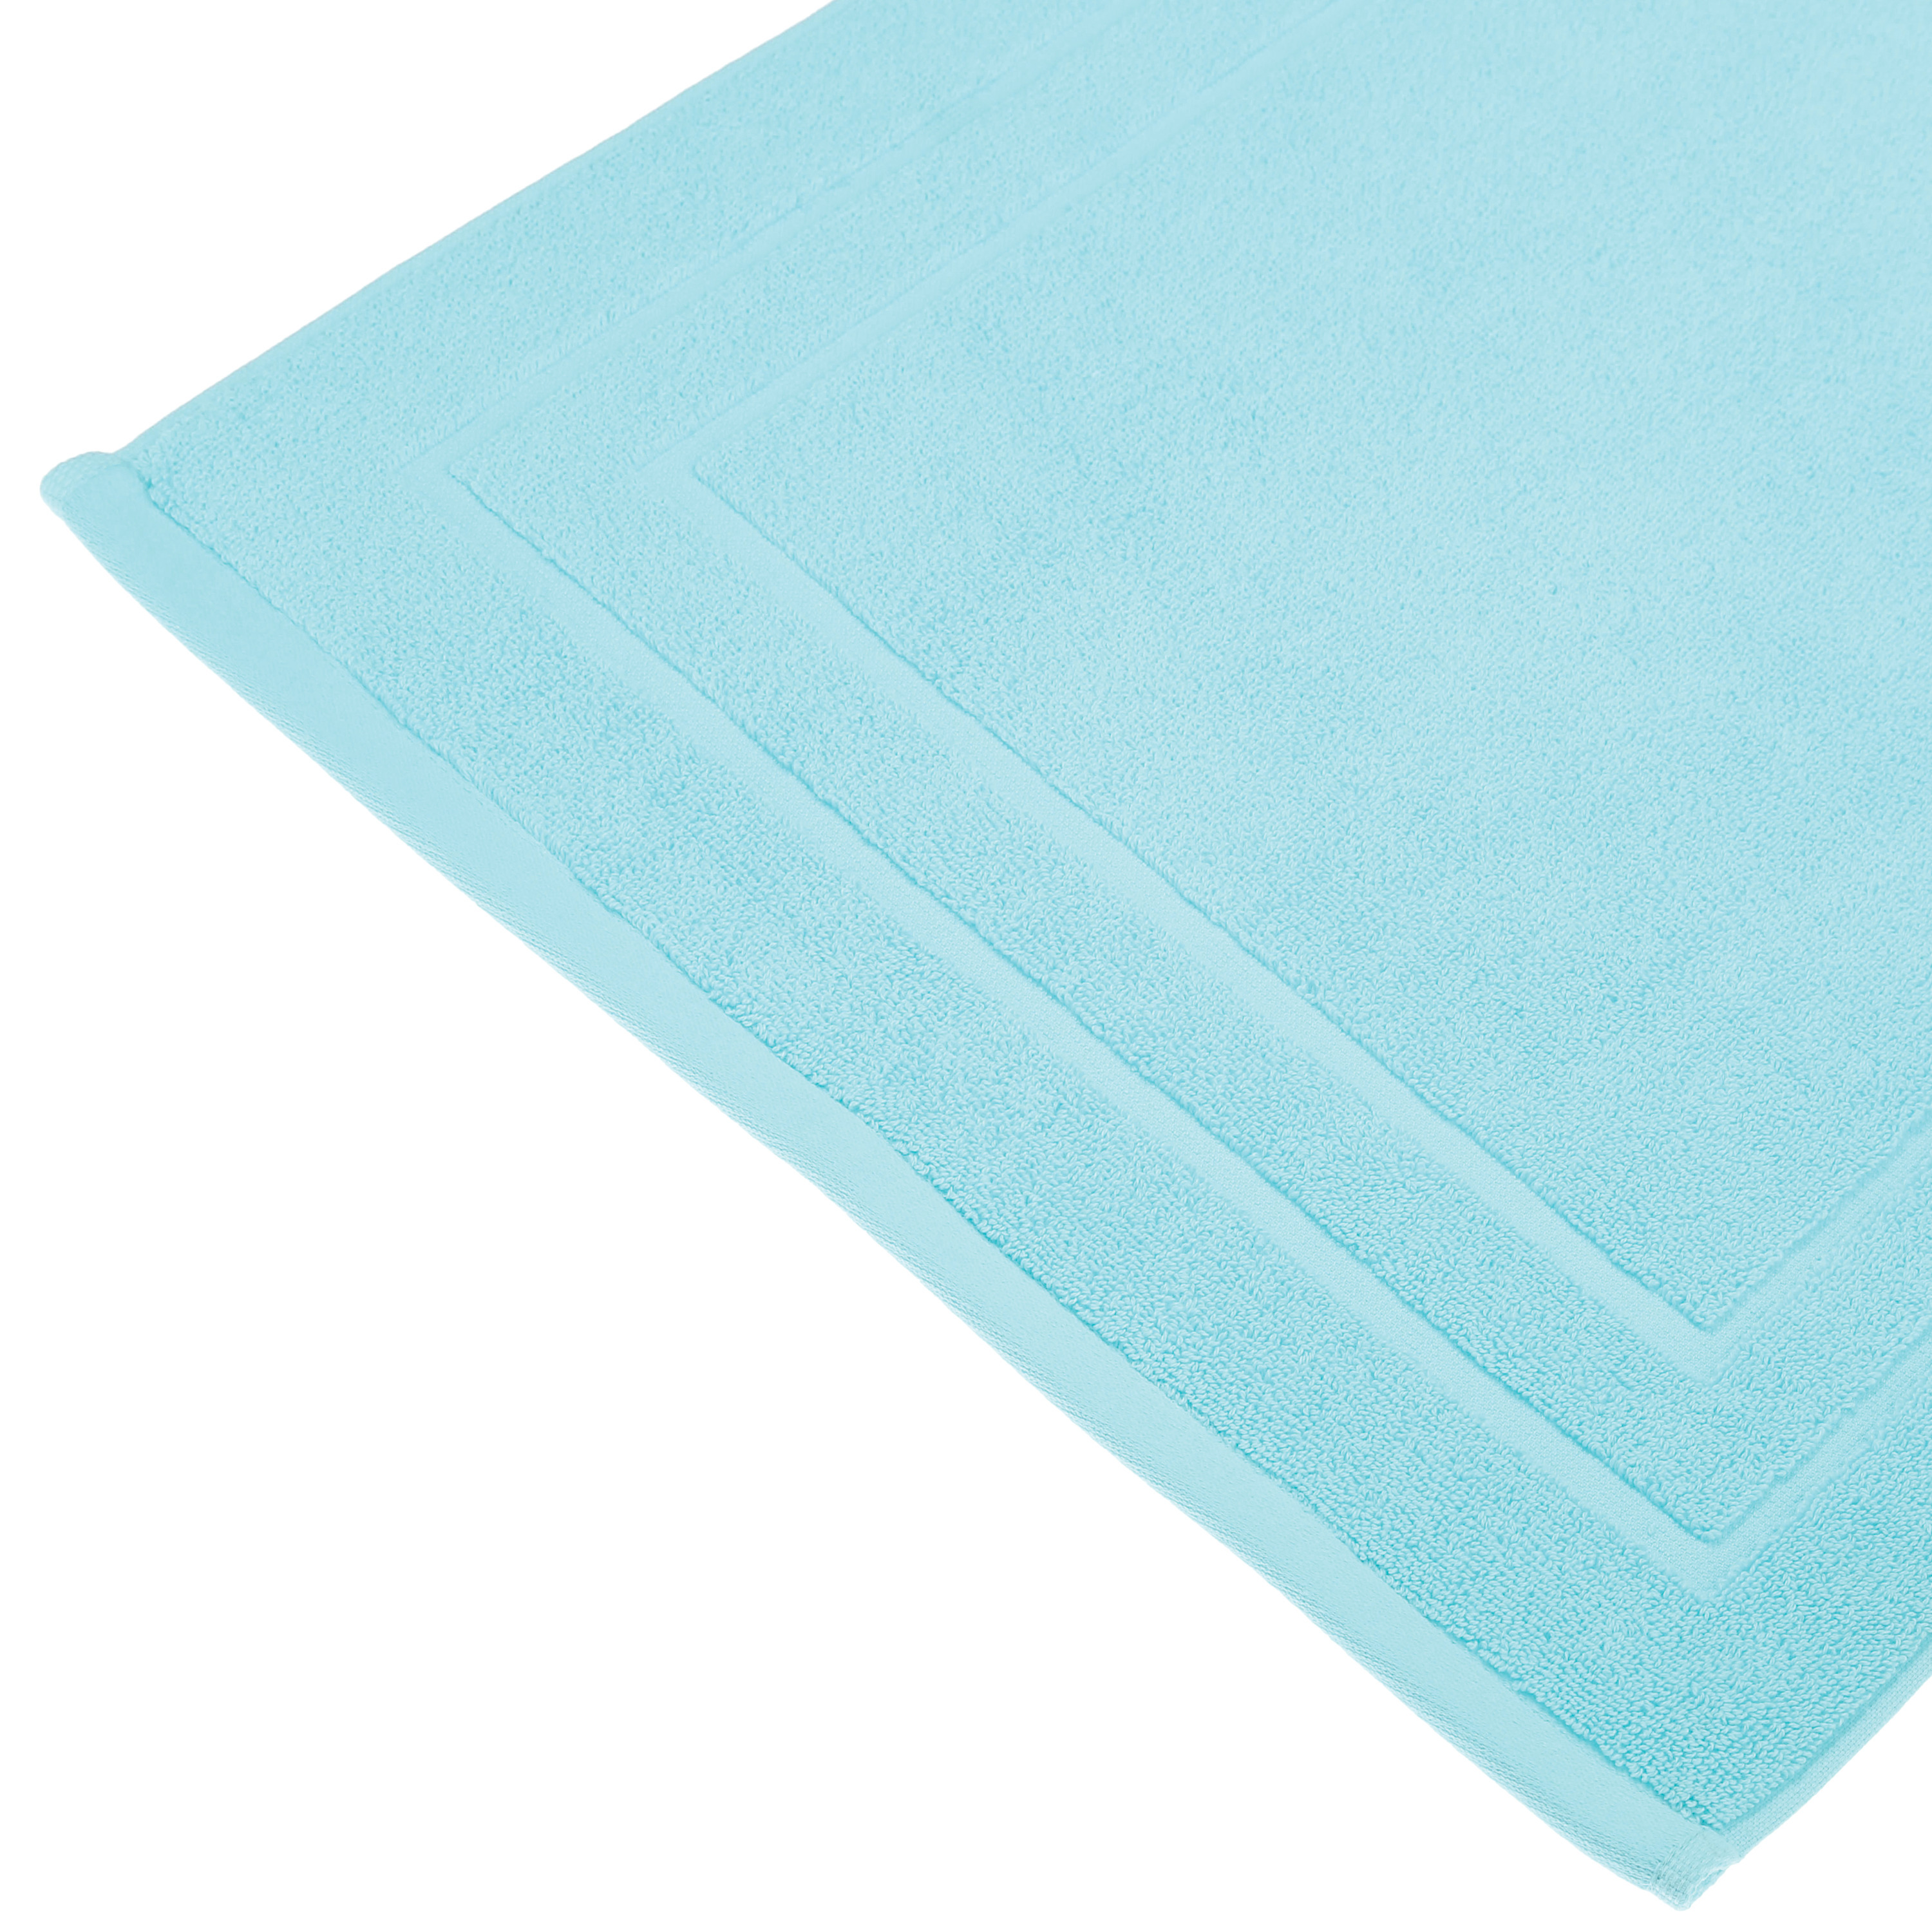 Badkamerkleed-badmat voor op de vloer aqua blauw 50 x 70 cm